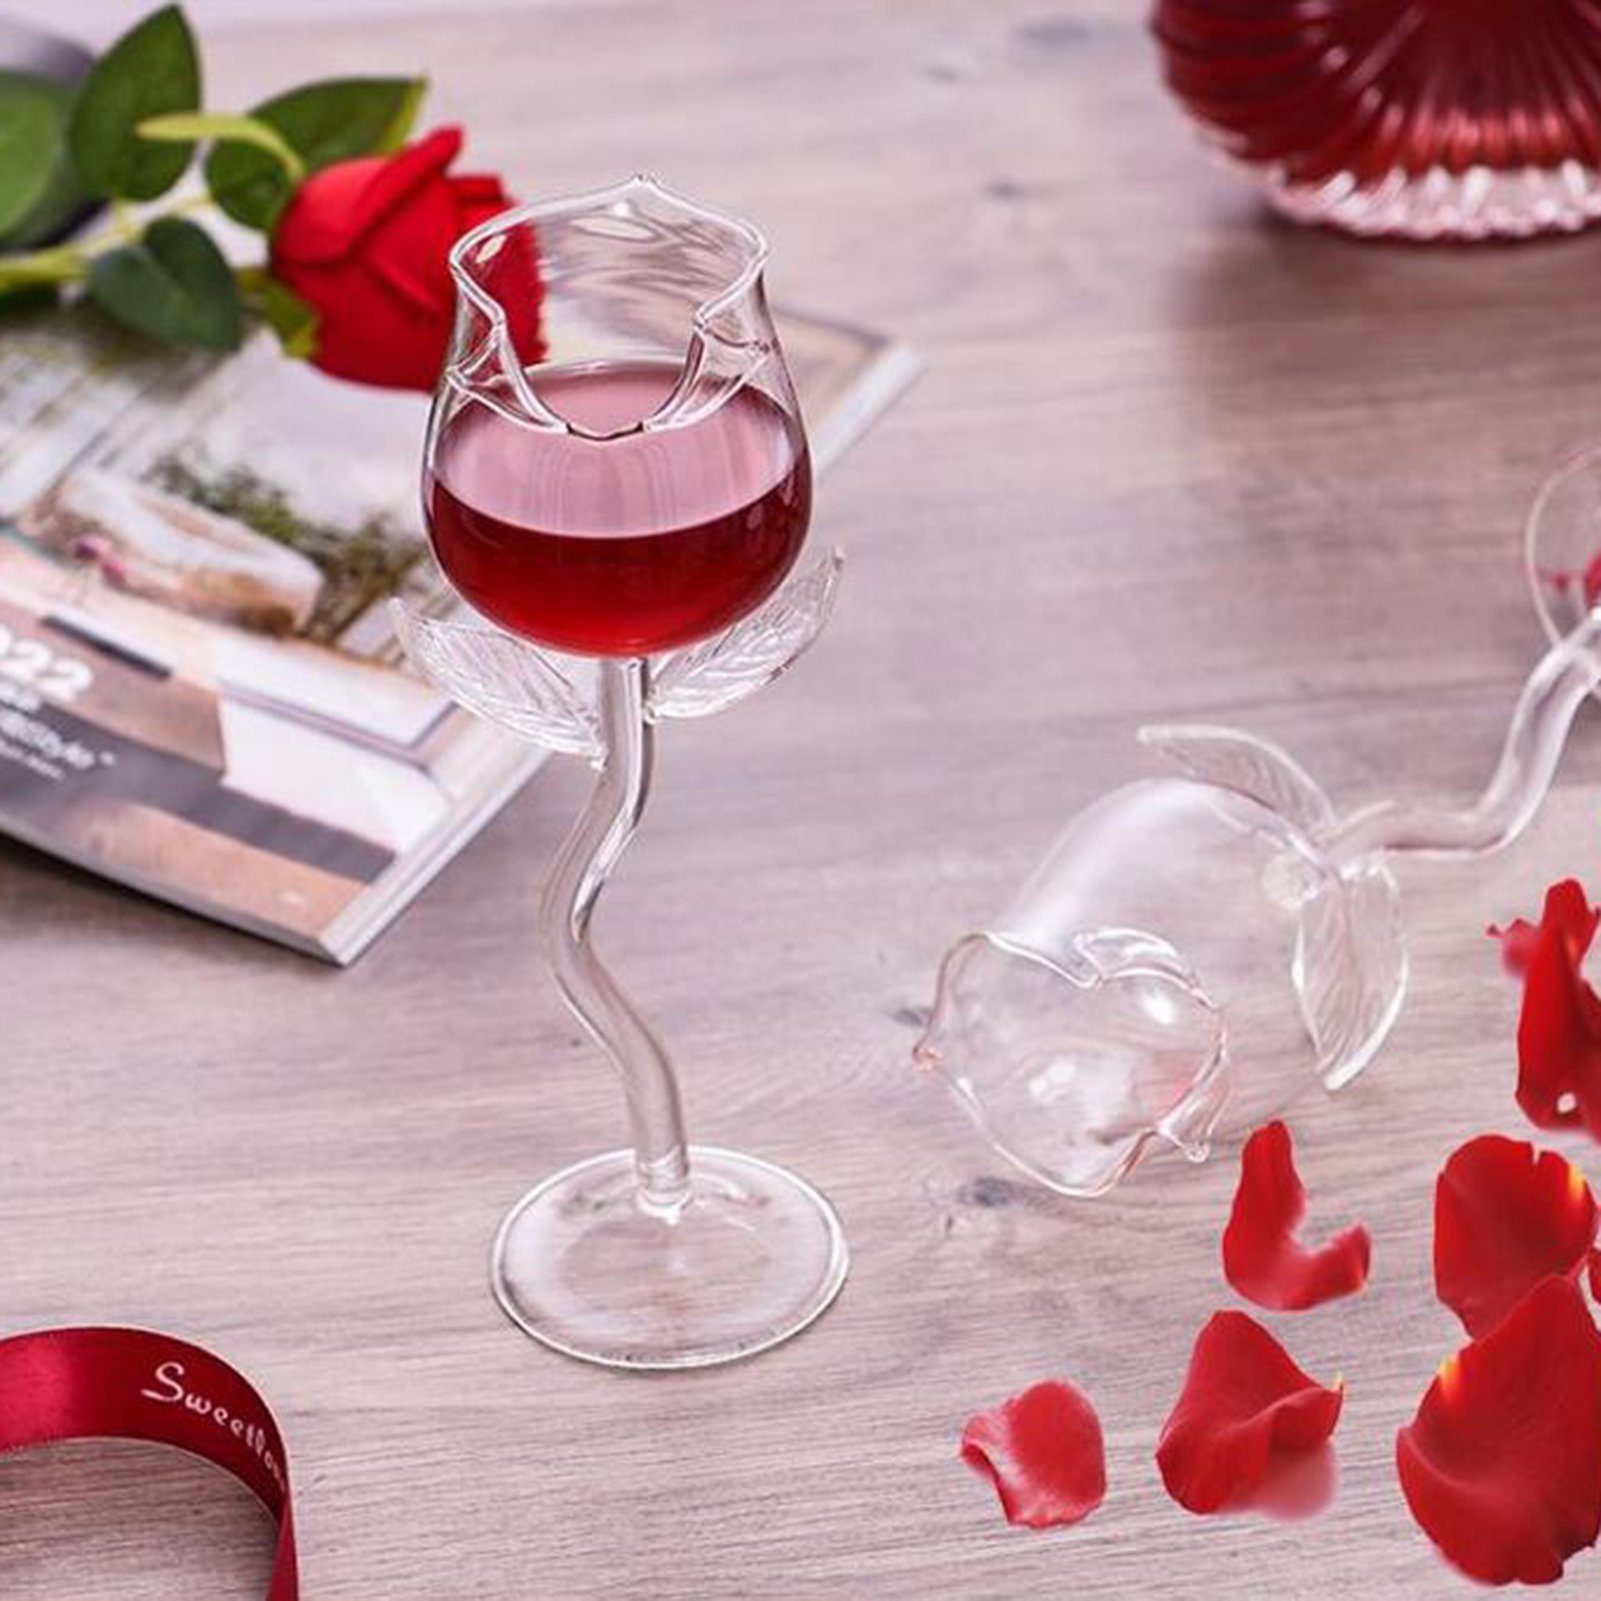 Fallfestigkeit -Goblet Rosenform transparent für Weinglas -Tasse Popubear Rotweinglas Zuhause,